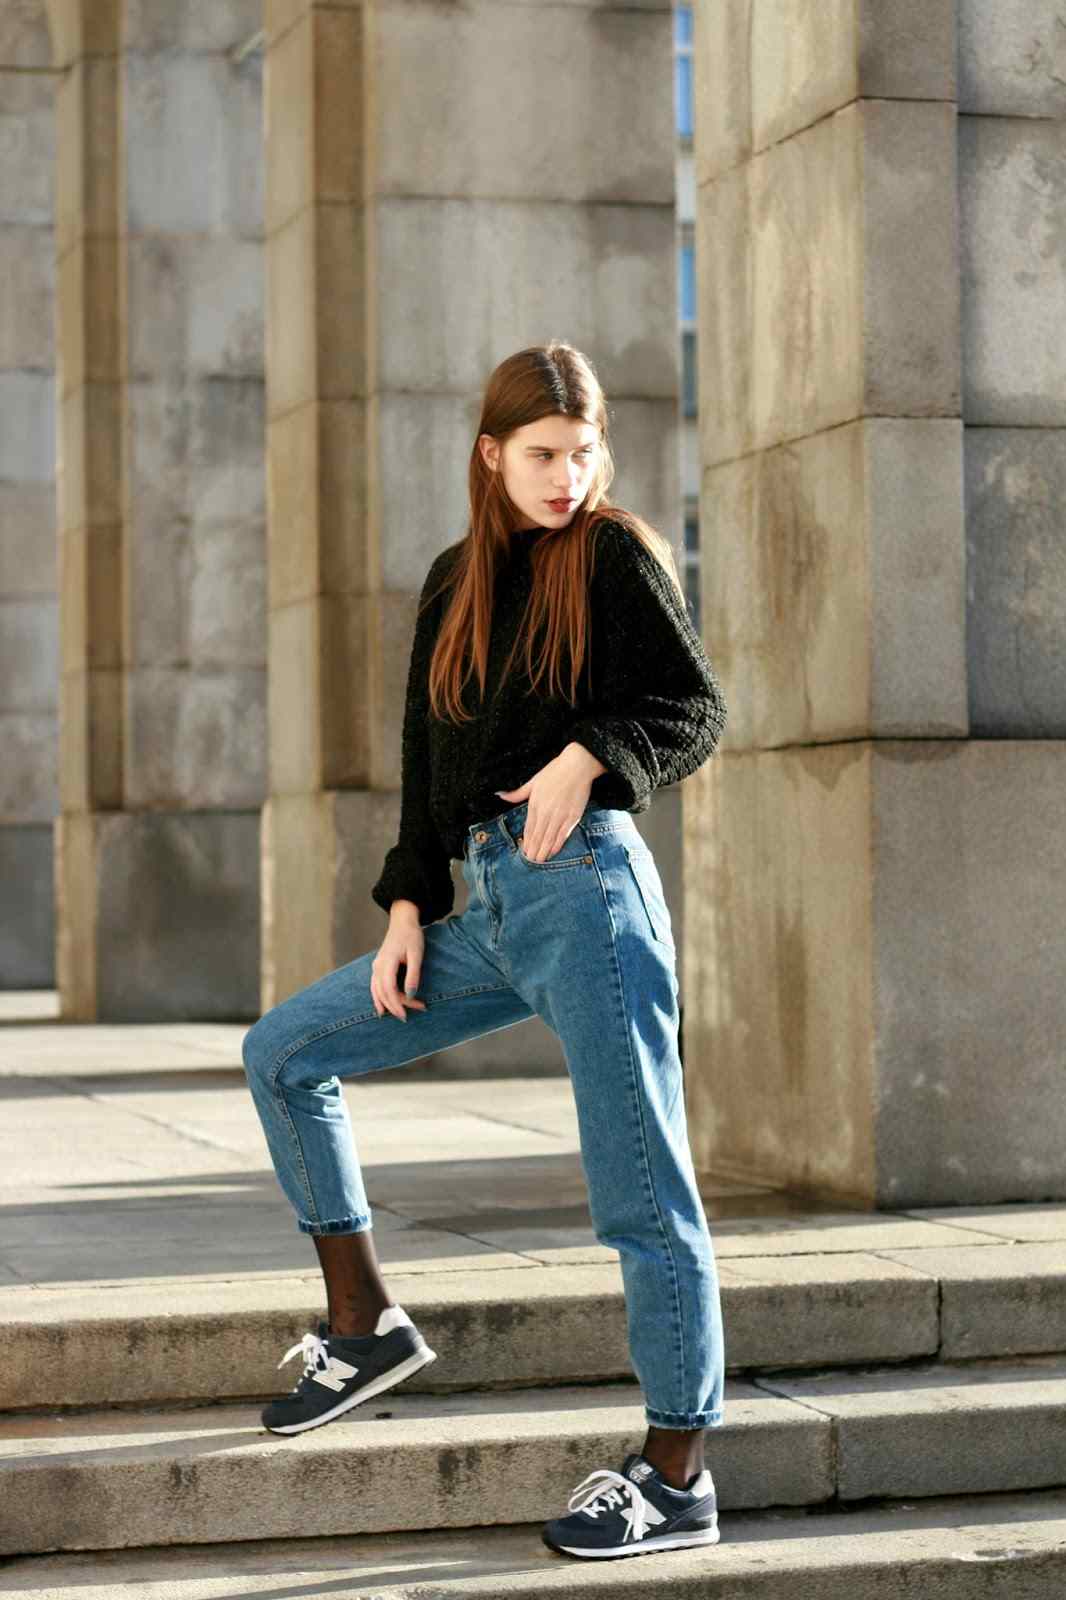 Os jeans da mamãe combinam as novas tendências da moda casual com tênis suéter preto